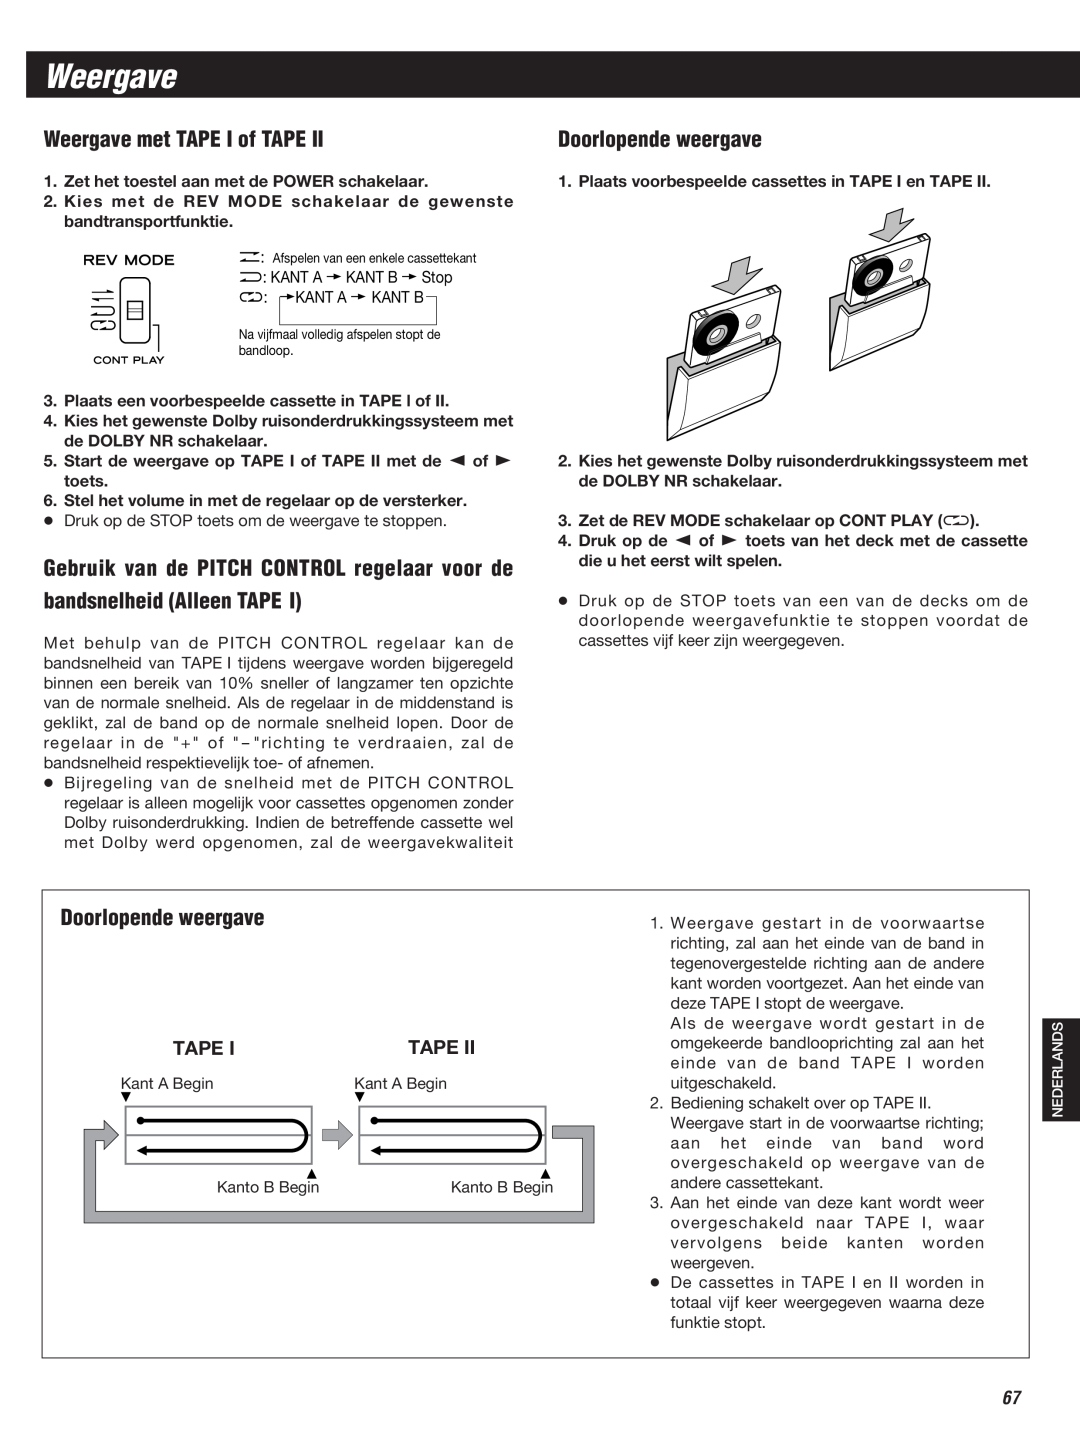 Teac W-860R owner manual Weergave met TAPE I of TAPE, bandsnelheid Alleen TAPE, Doorlopende weergave, Tape 